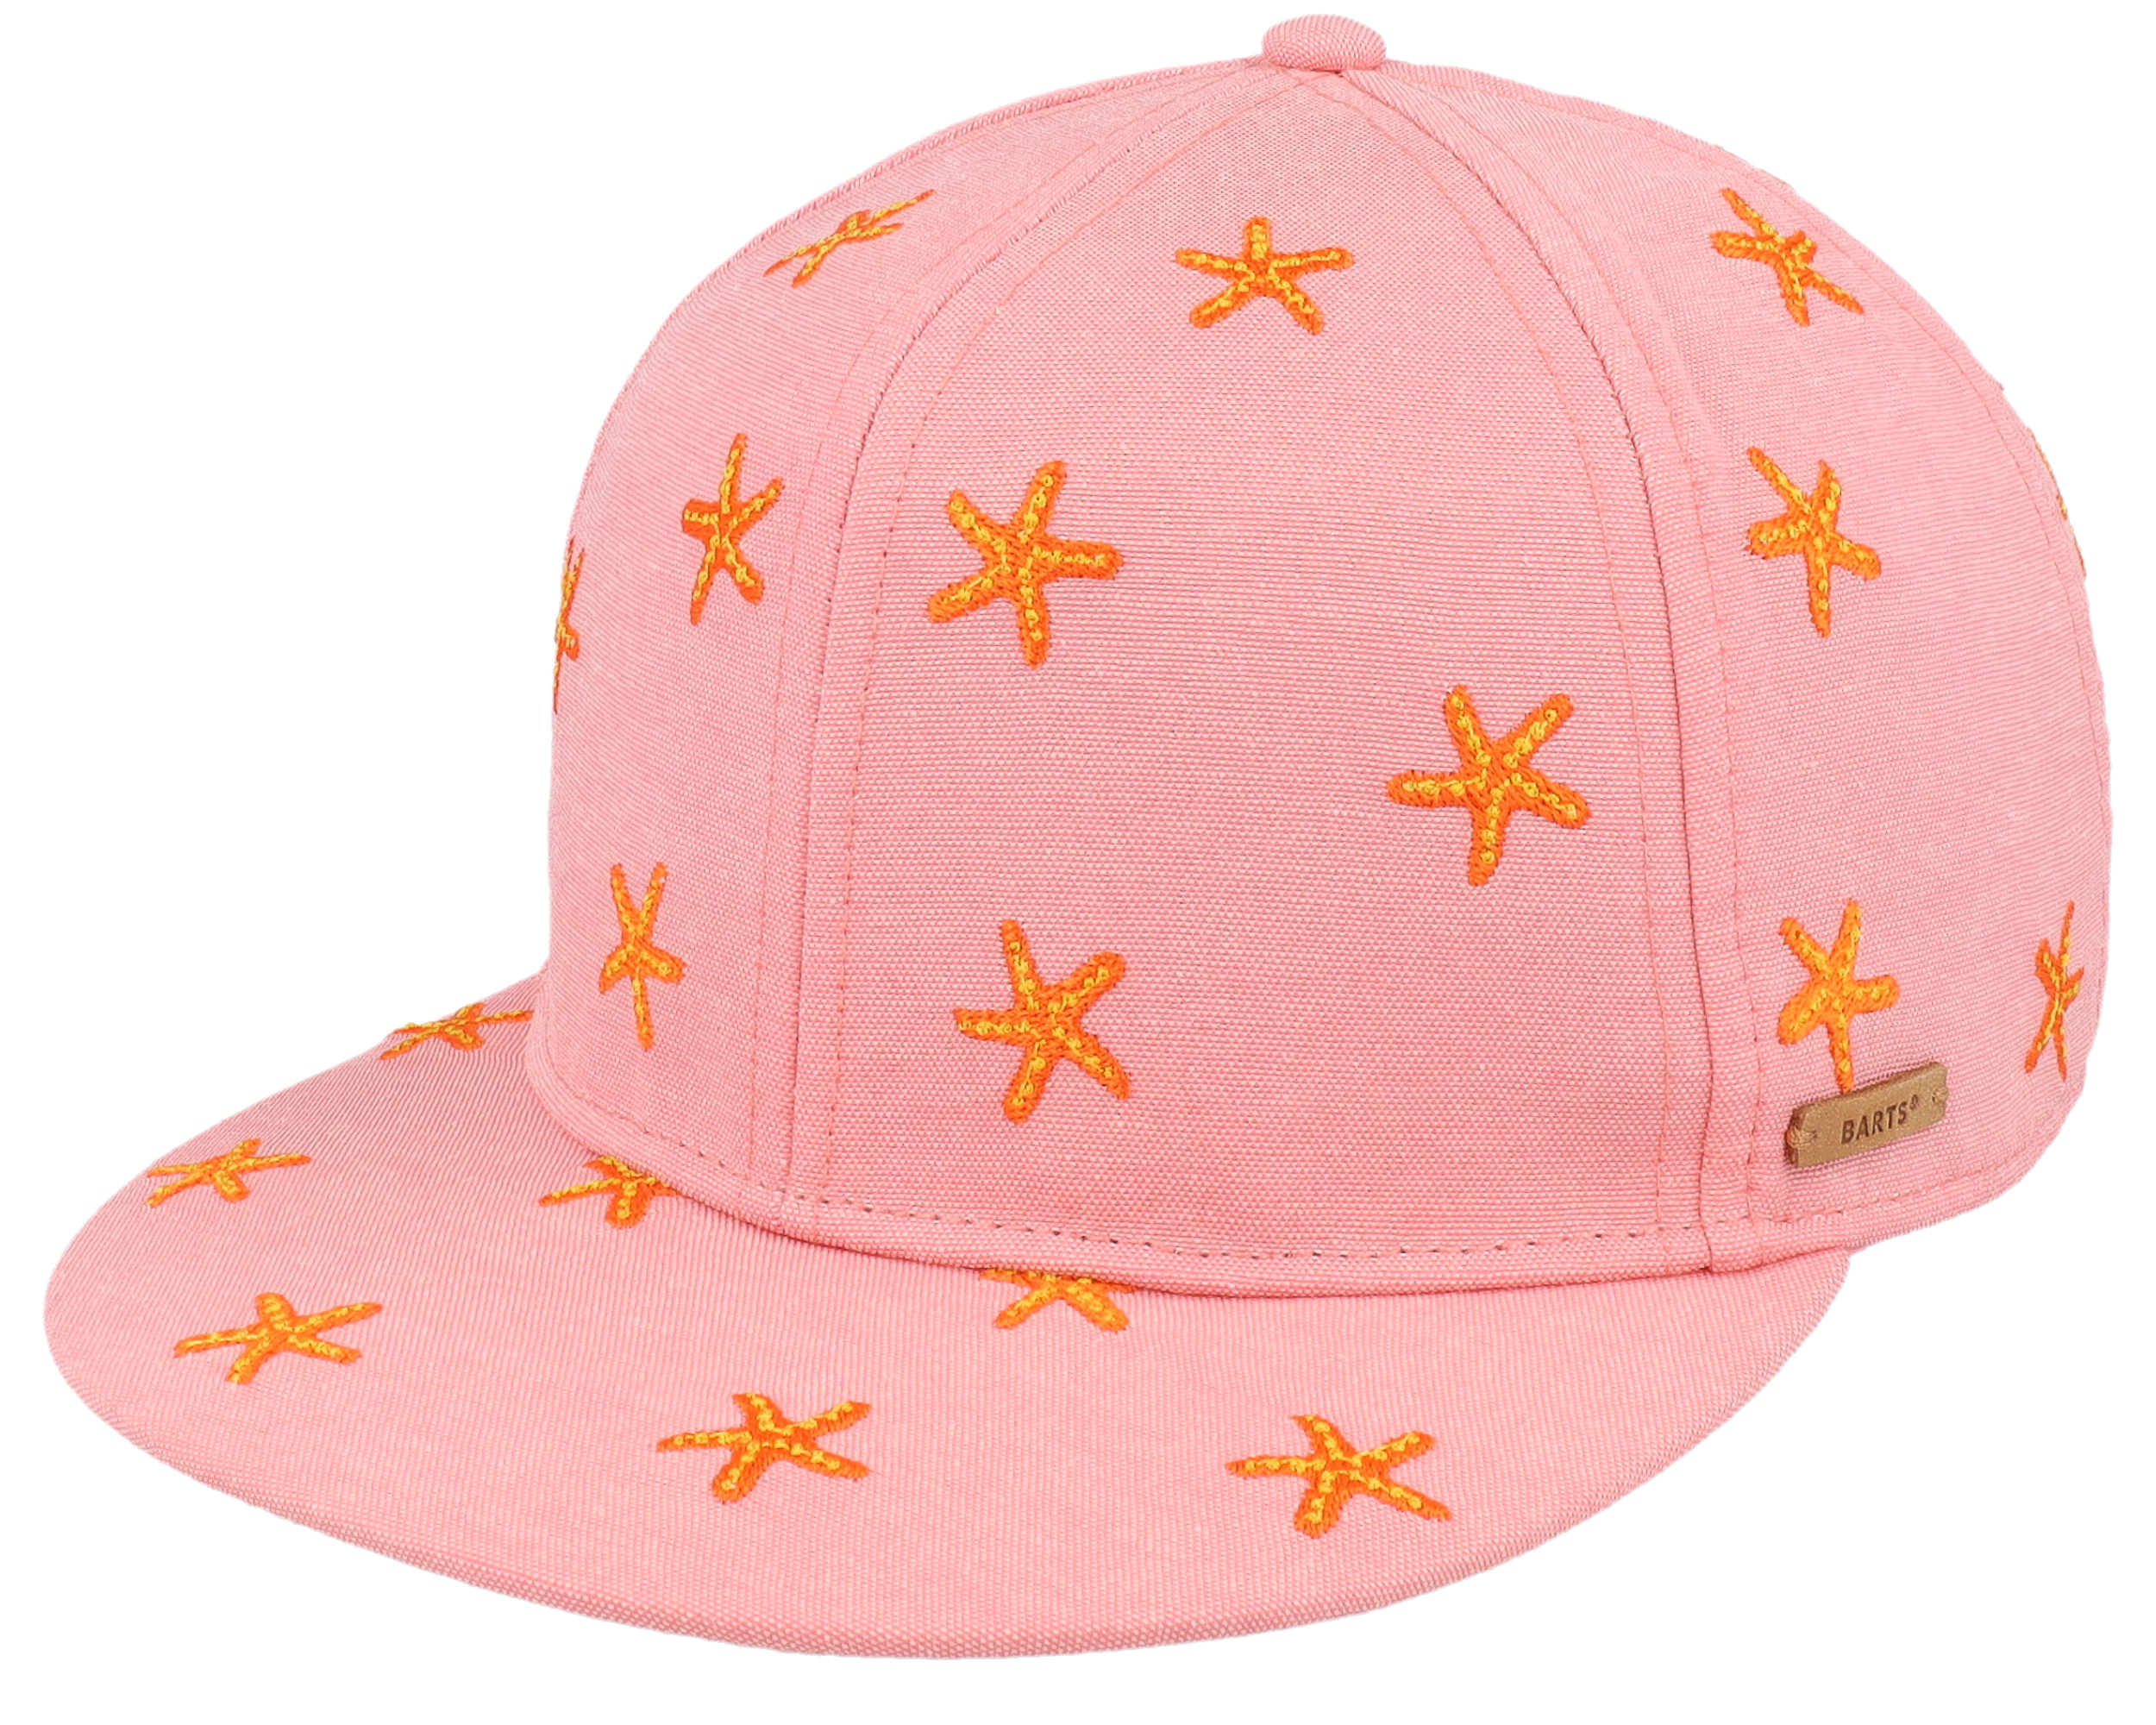 Kids Pauk Cap Pink cap - Barts Snapback